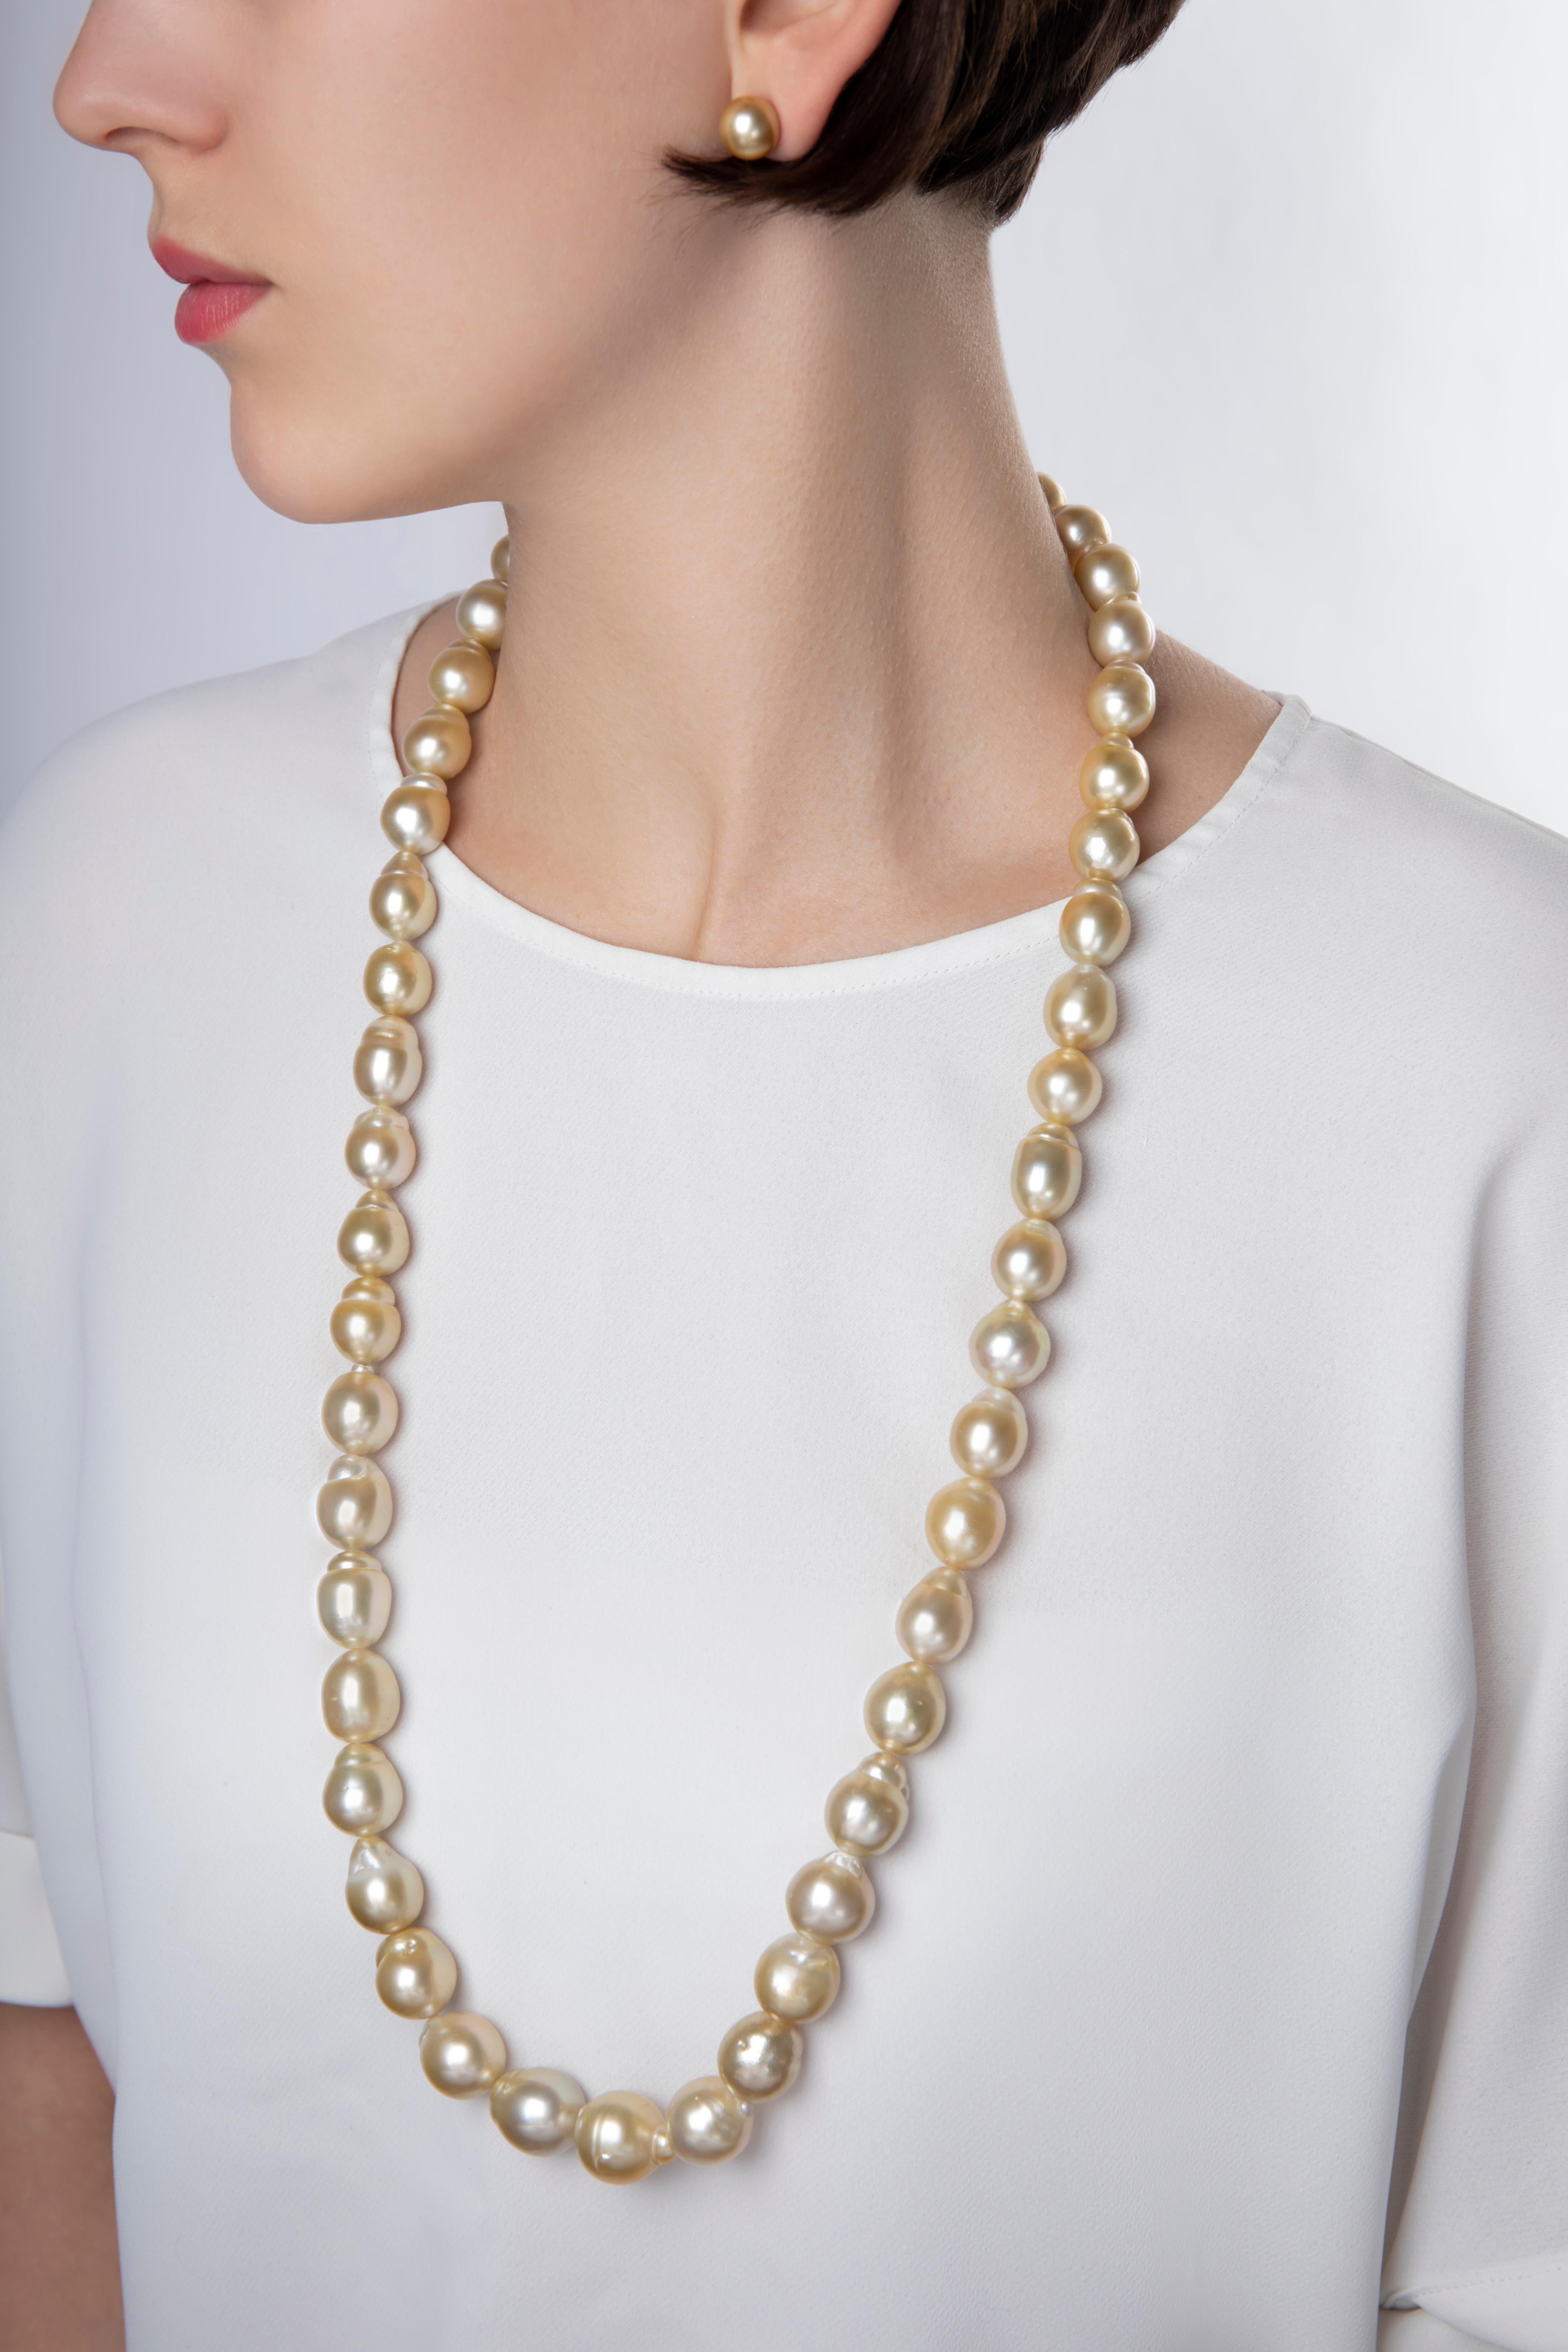 Diese einzigartige Halskette von Yoko London besteht aus spektakulären 13-17 mm großen barocken goldenen Südseeperlen. Jede Barockperle ist ein absolutes Unikat, und dieses einzigartige Collier unterstreicht perfekt ihren Reiz und ihre Mystik. Diese